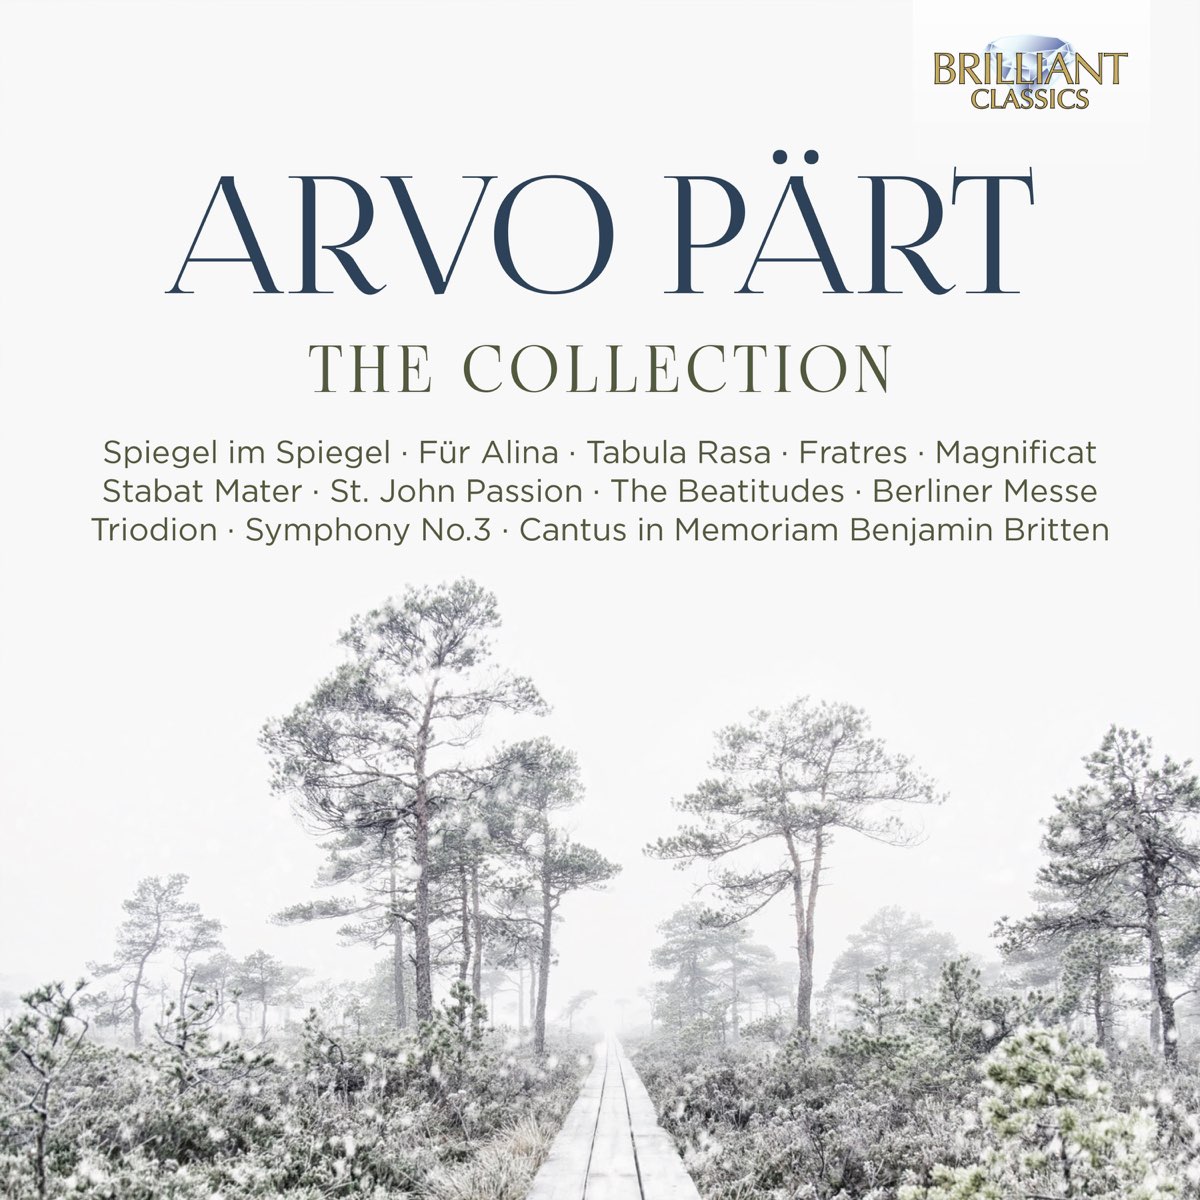 Arvo Pärt Collection by Various Artiest on Apple Music